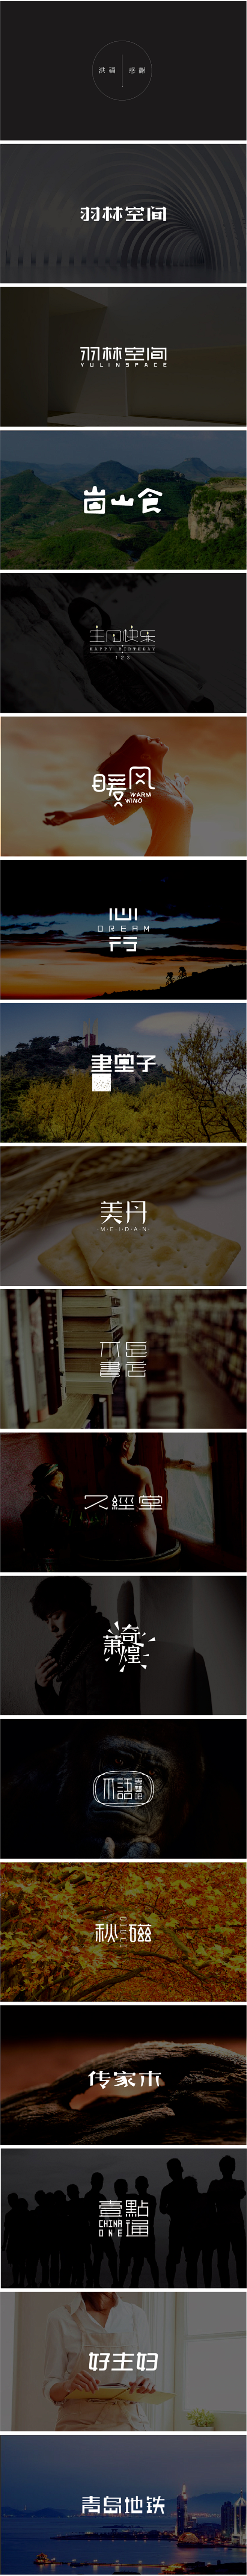 字体设计是硬功夫，一批大气简洁的中文字体...